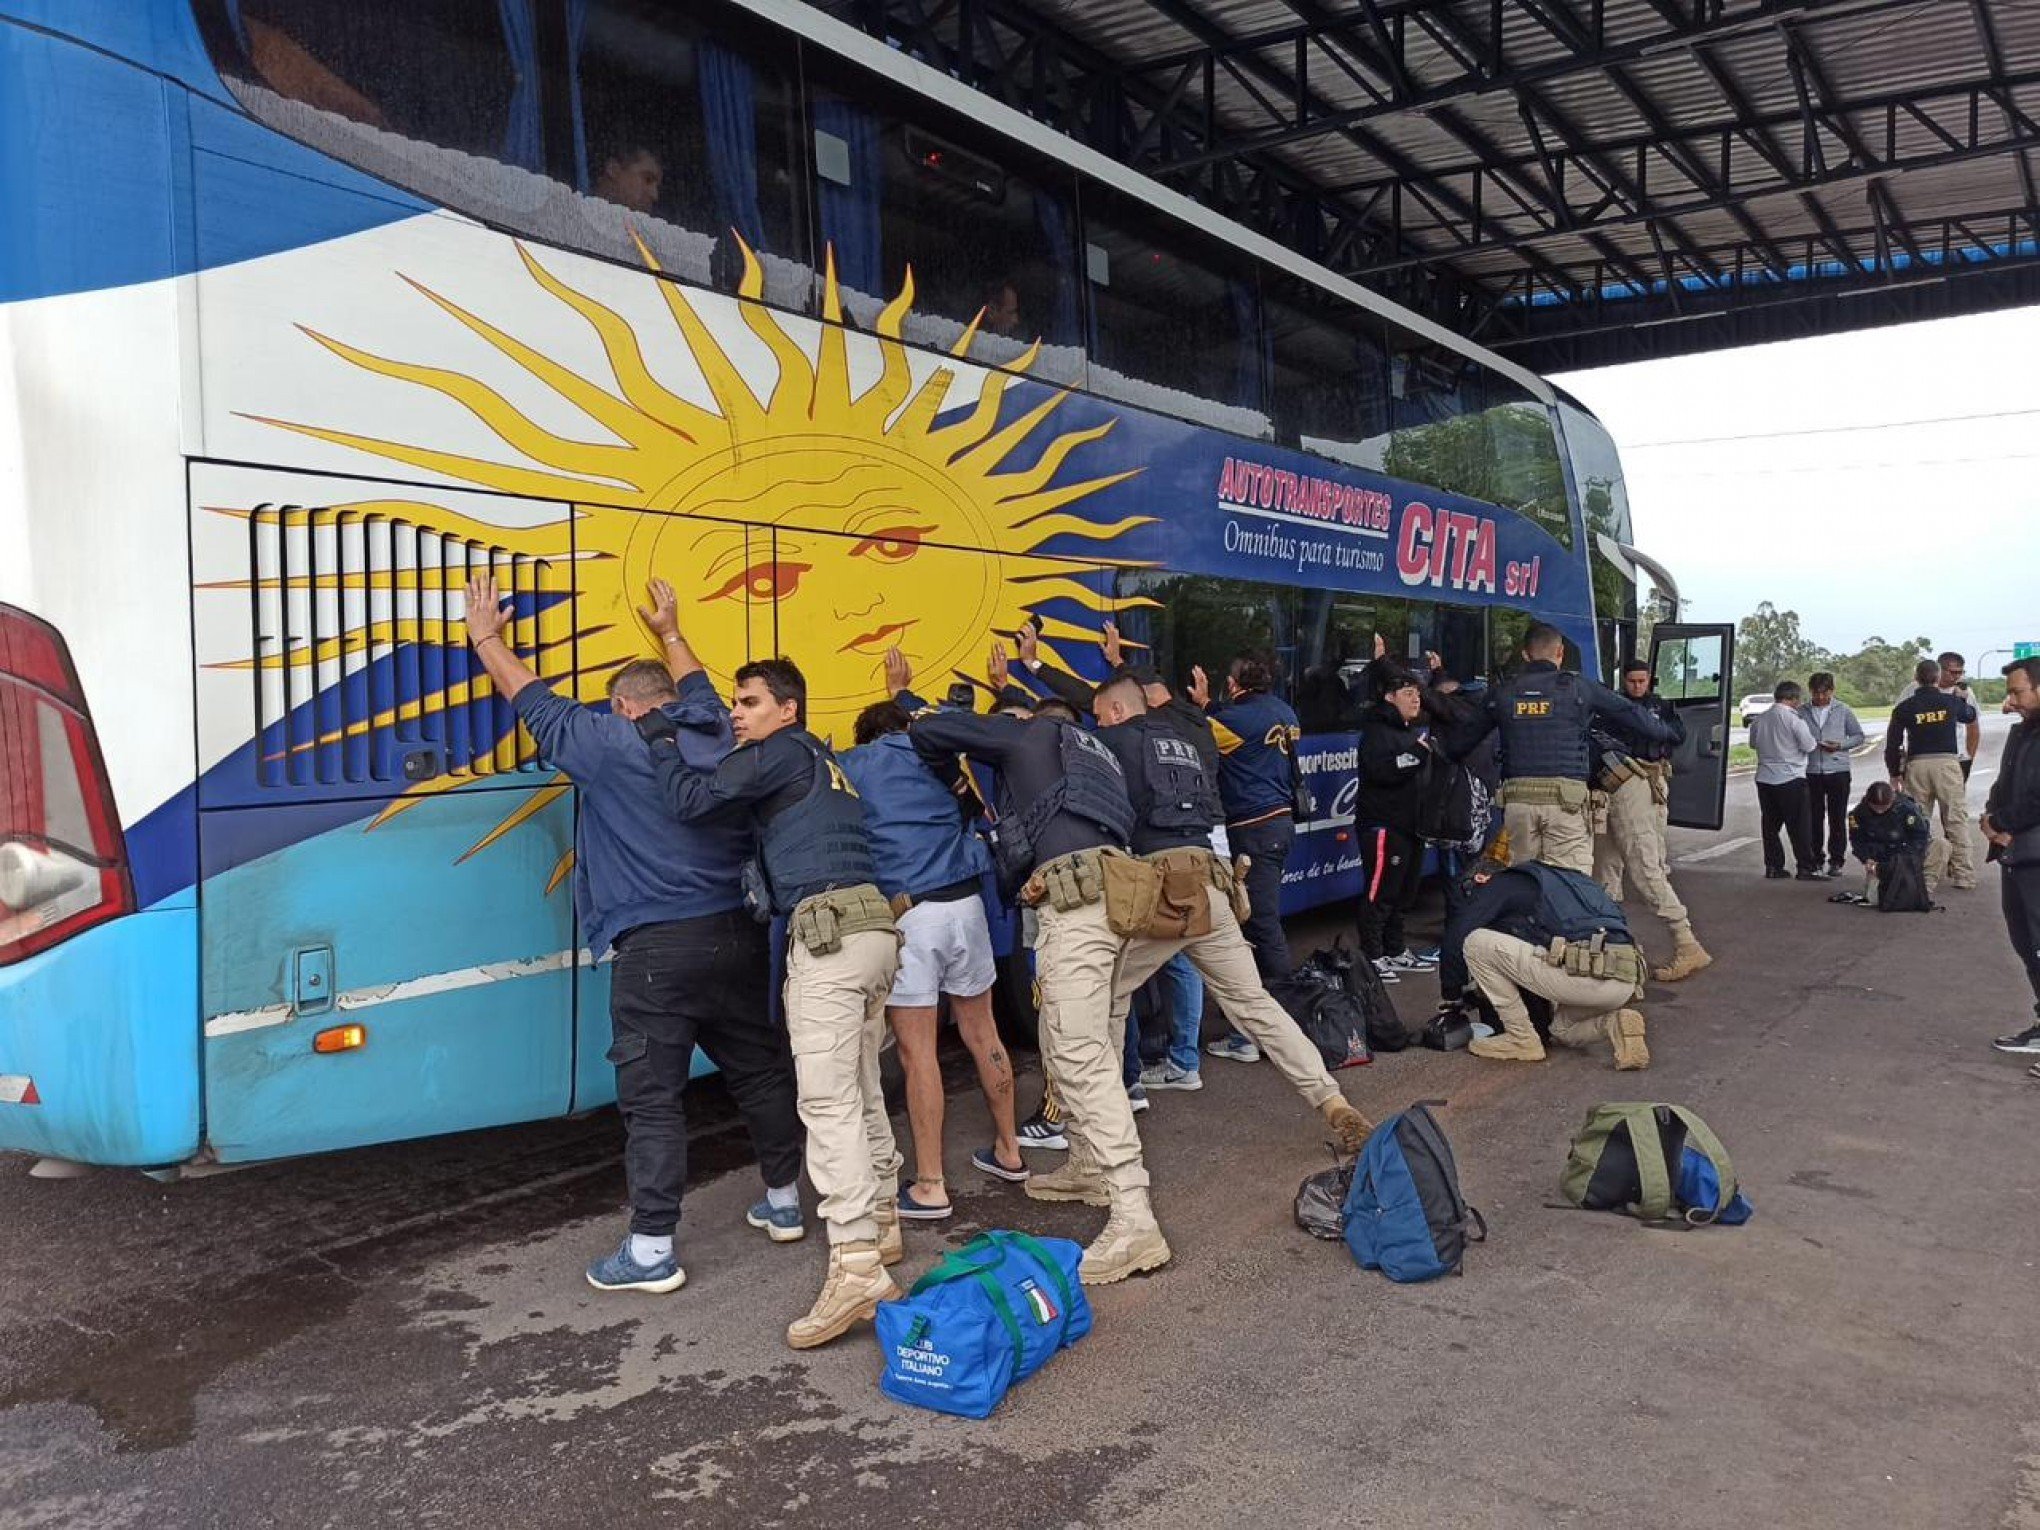 LIBERTADORES: Excursões de torcedores do Boca Juniors passam por fiscalização no Rio Grande do Sul